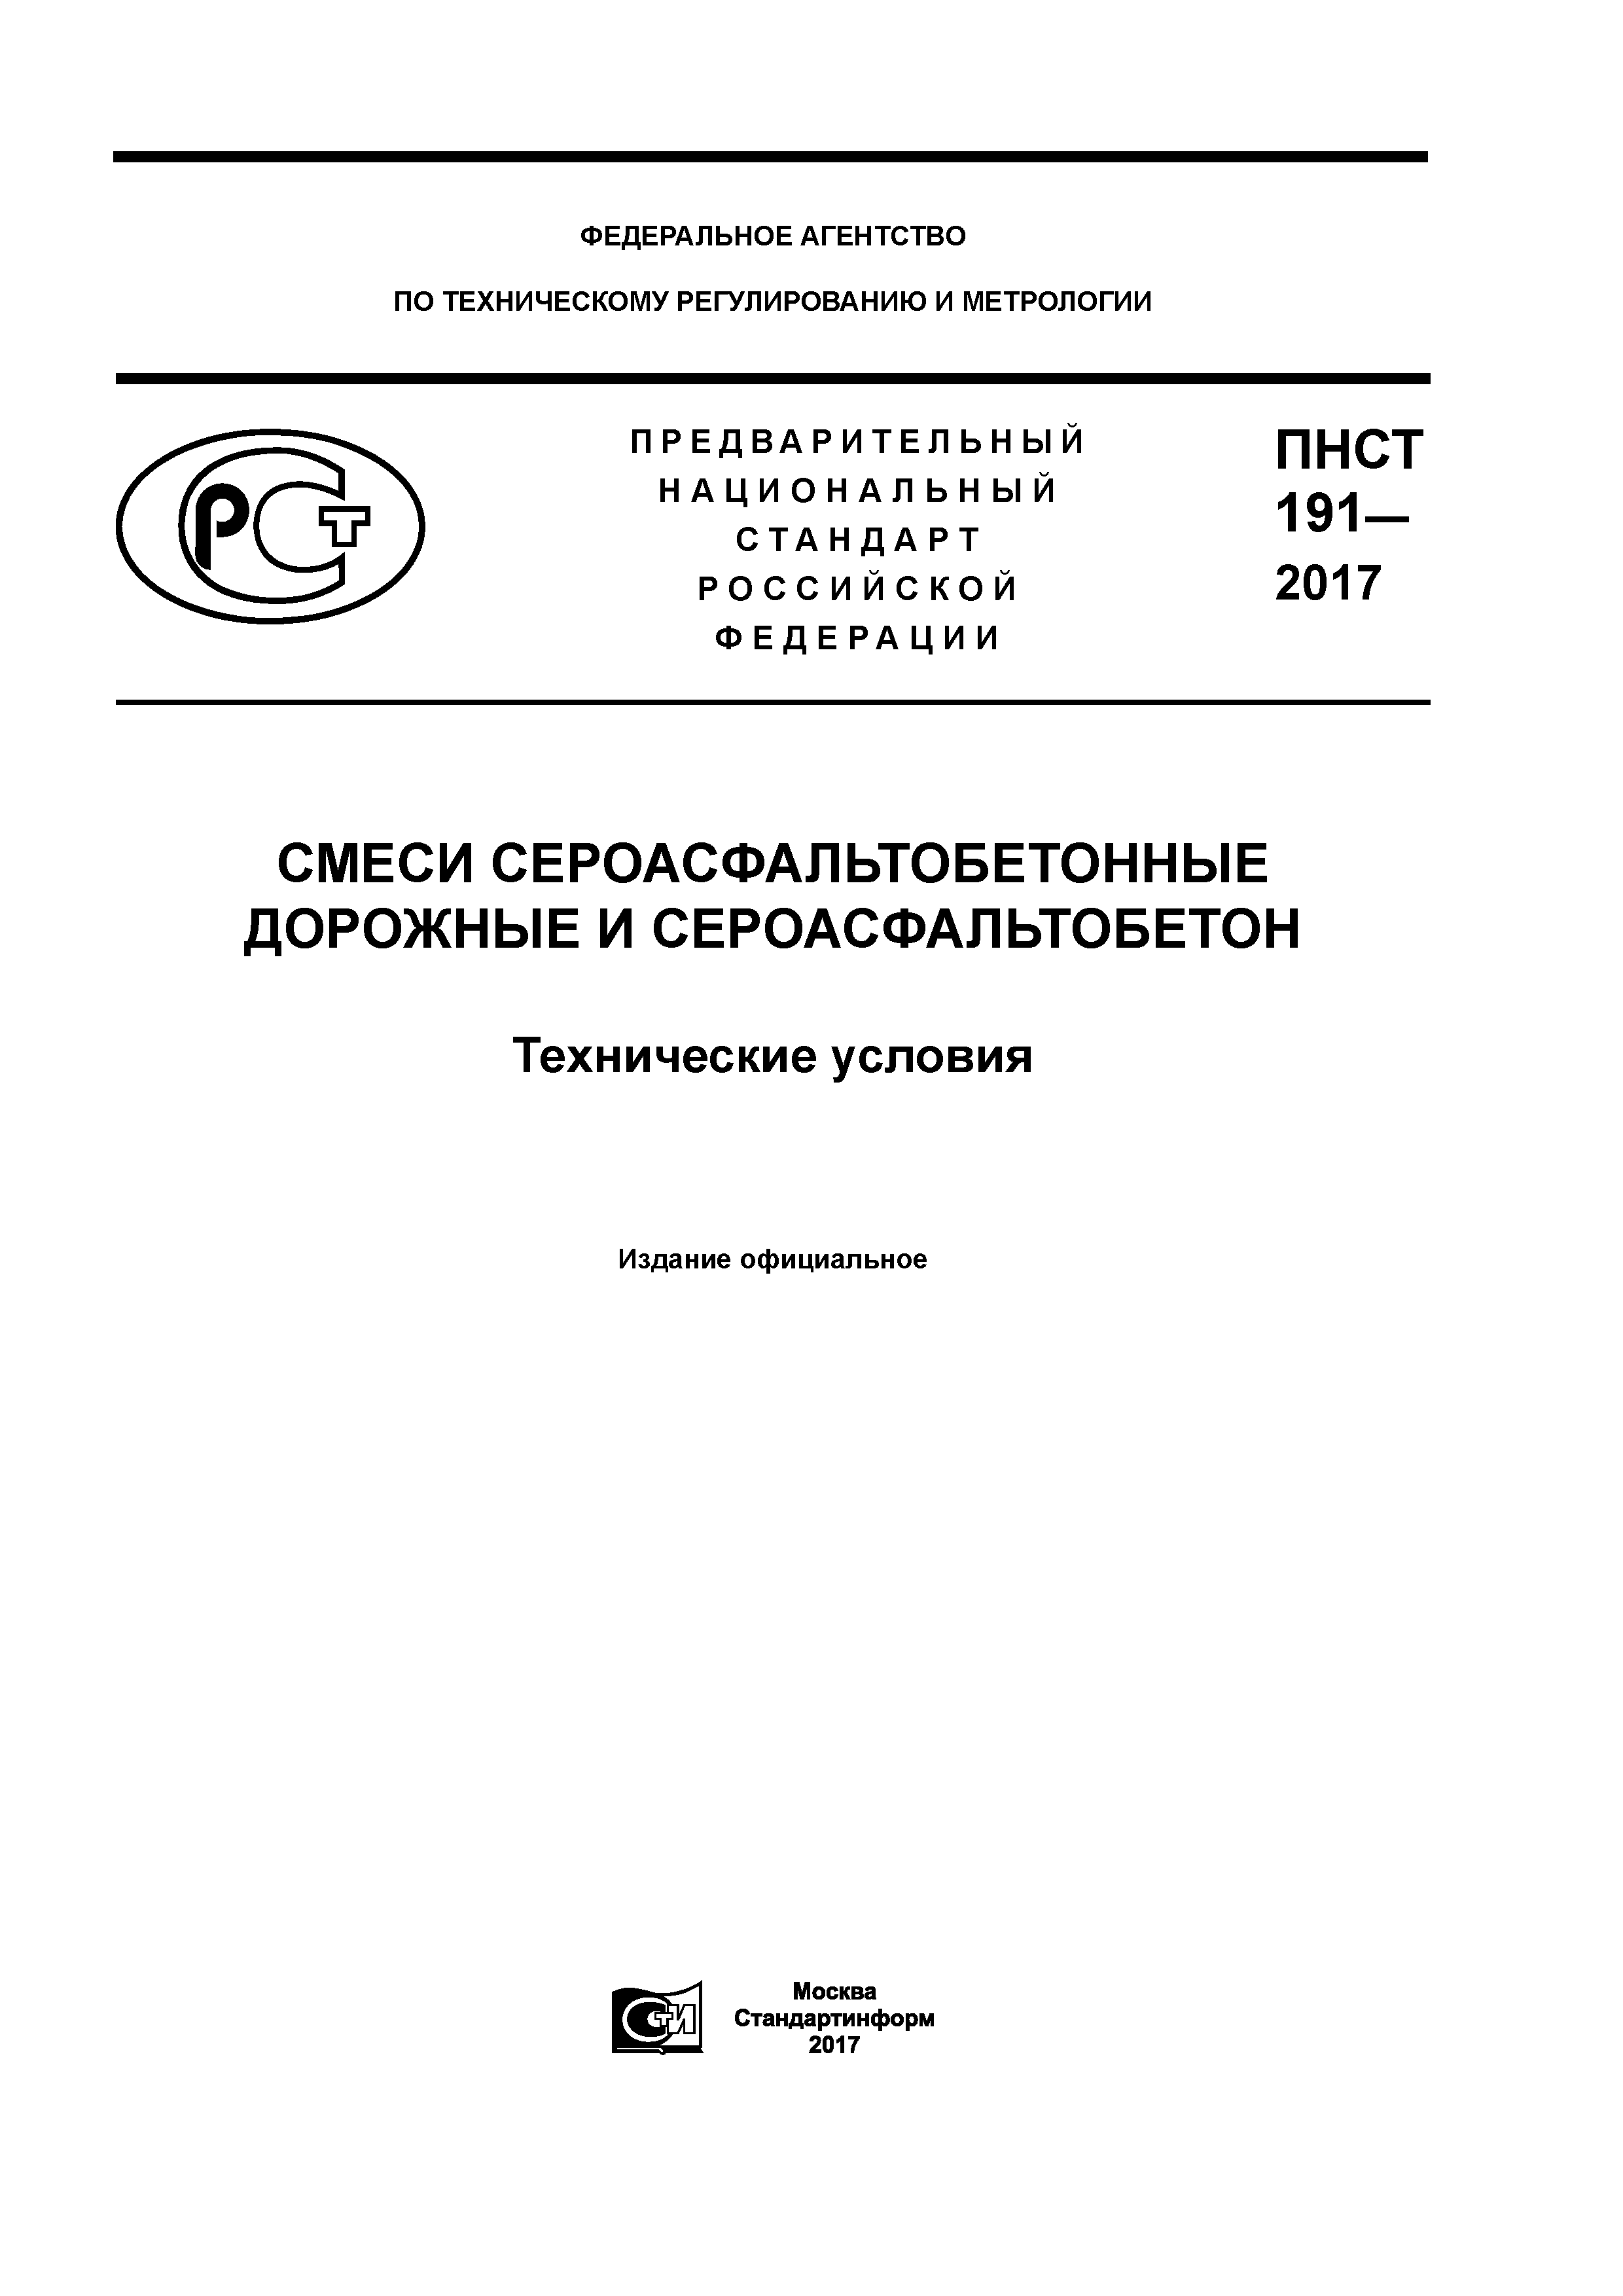 ПНСТ 191-2017